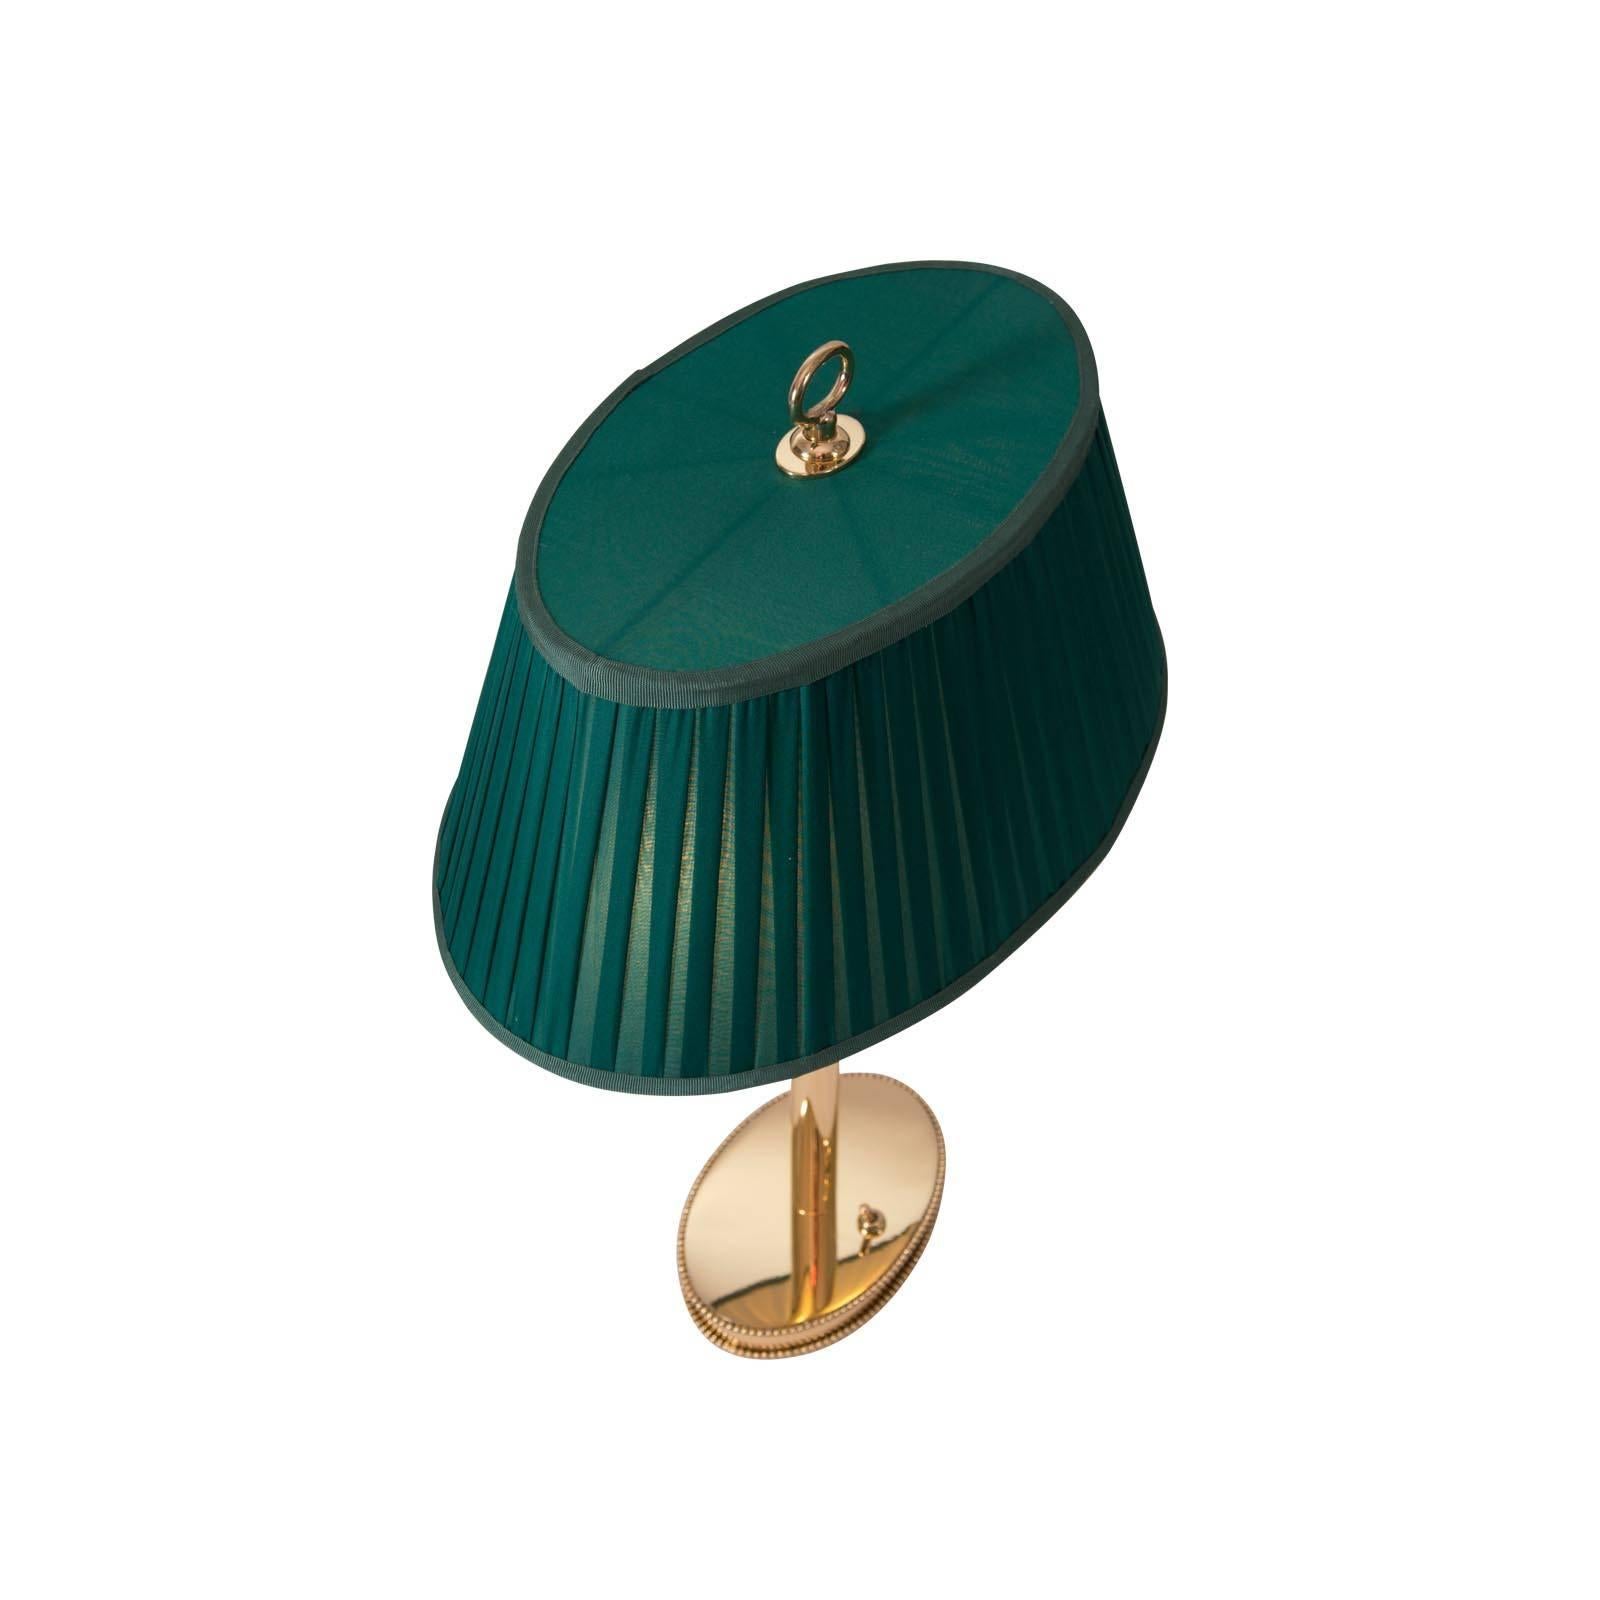 Eine Josef Hoffmann Tischlampe mit einem Stoffschirm - verschiedene Farben sind erhältlich
Ursprünglich im Atelier der Wiener Werkstätte hergestellt, heute Sonderanfertigung in der Woka-Lampenwerkstatt in Wien.
Steckdosen: Zwei